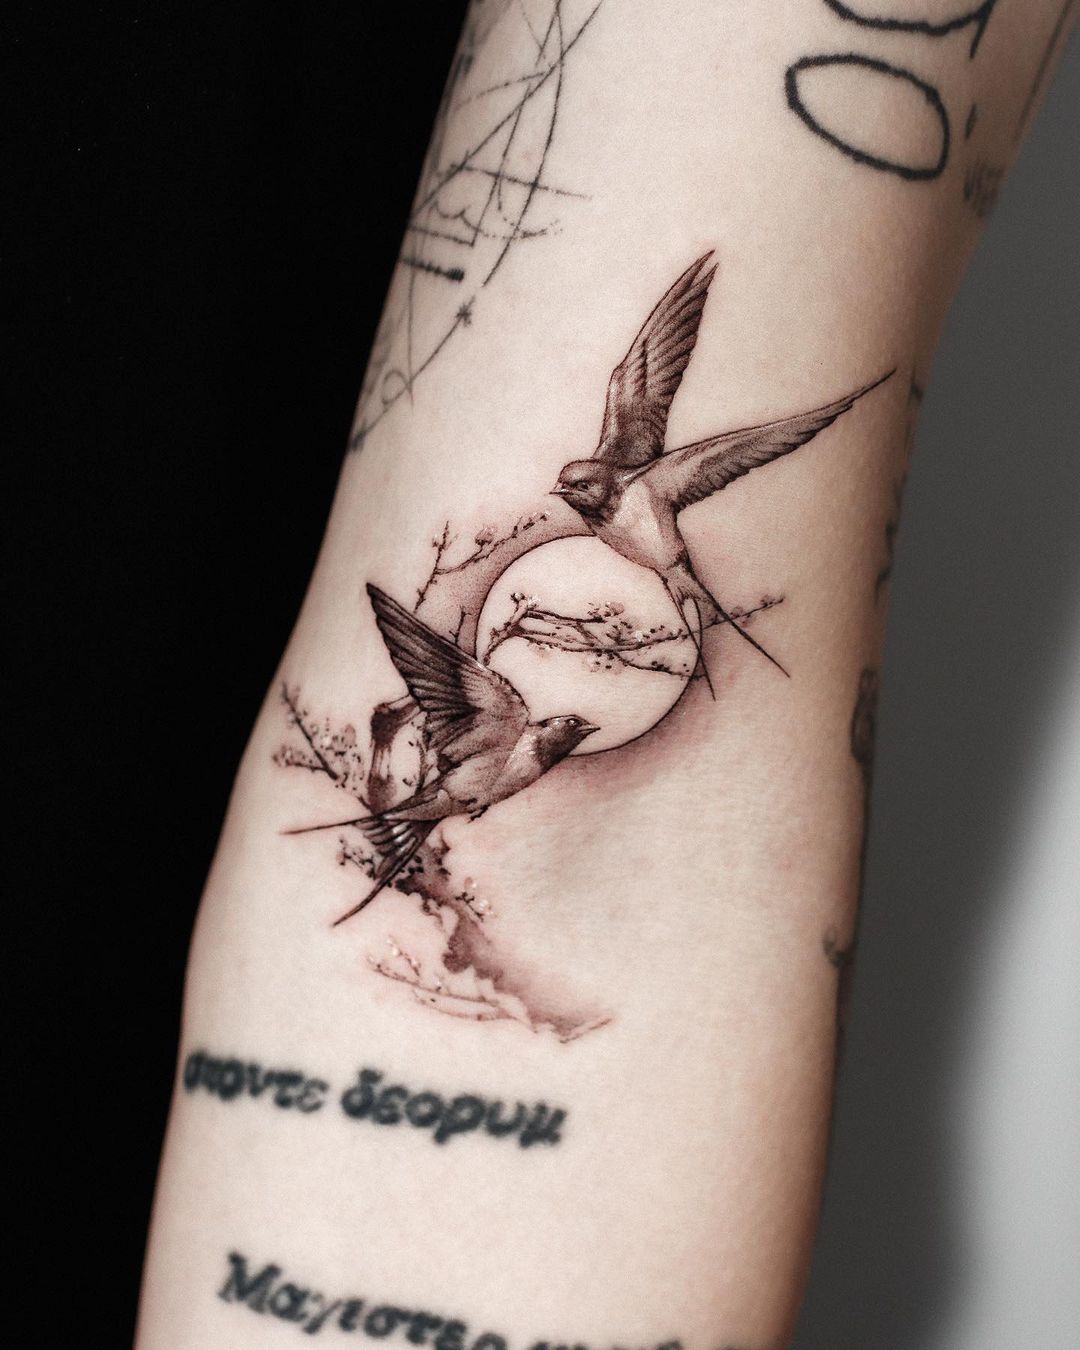 Swallow tattoo by jinkblack tattoo